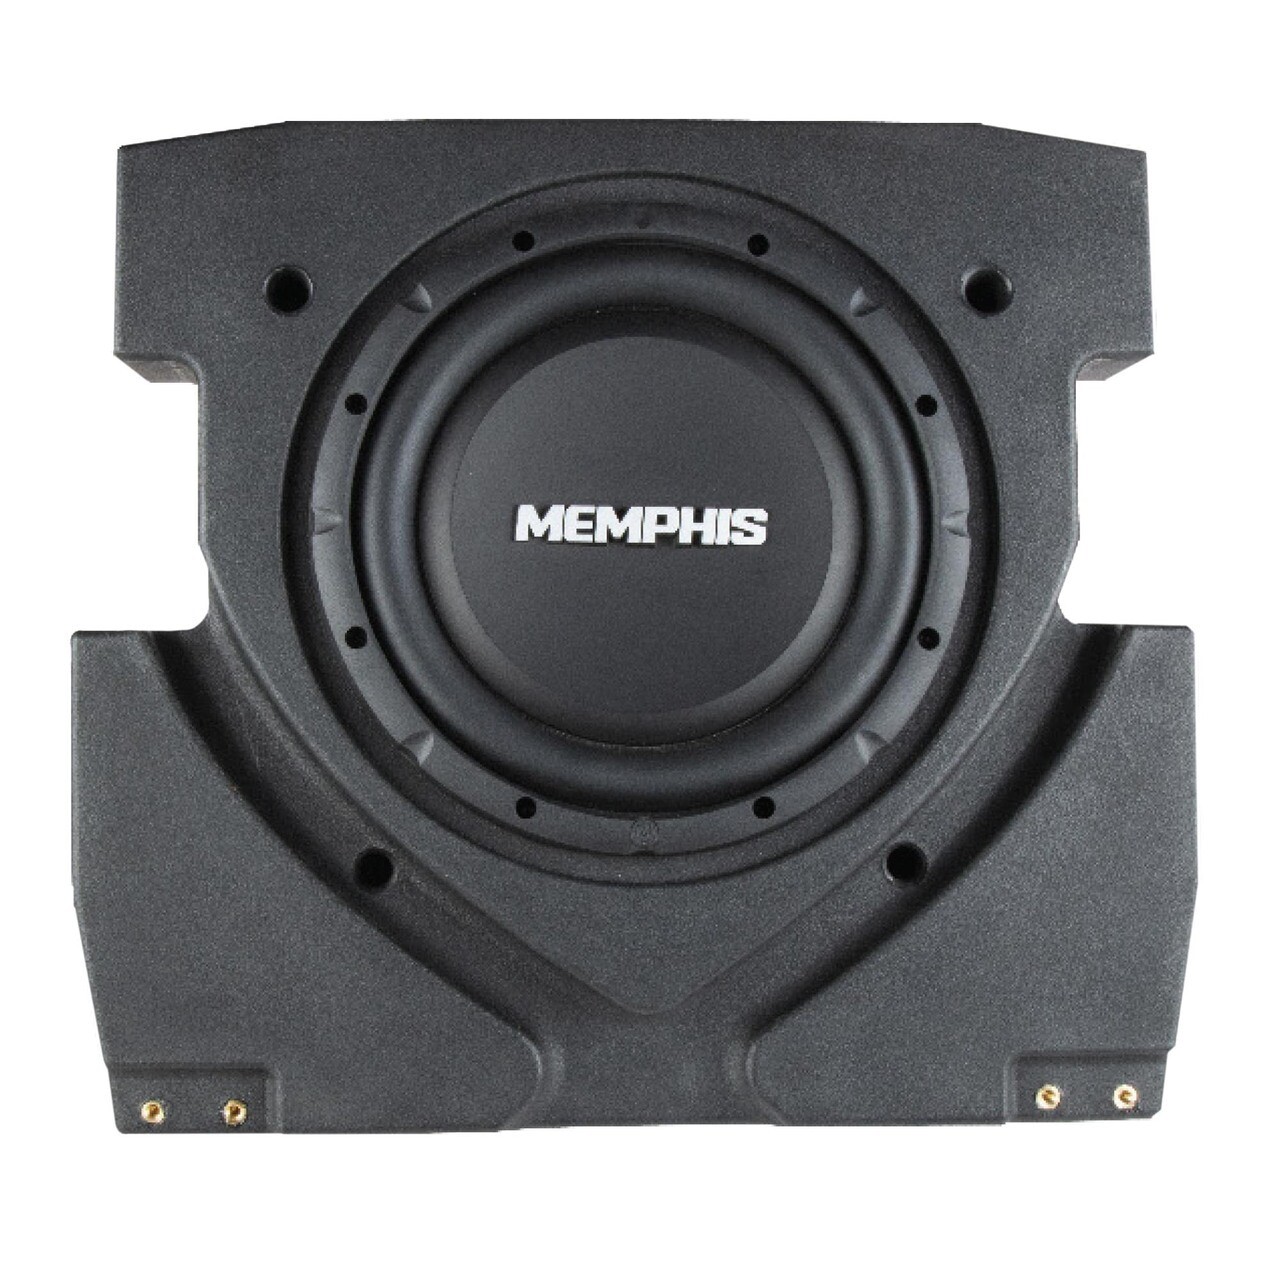 Eller senere Pigment Necklet Memphis Audio 10” Powered Subwoofer 200/400w For 17-22 Can-am Maverick X3